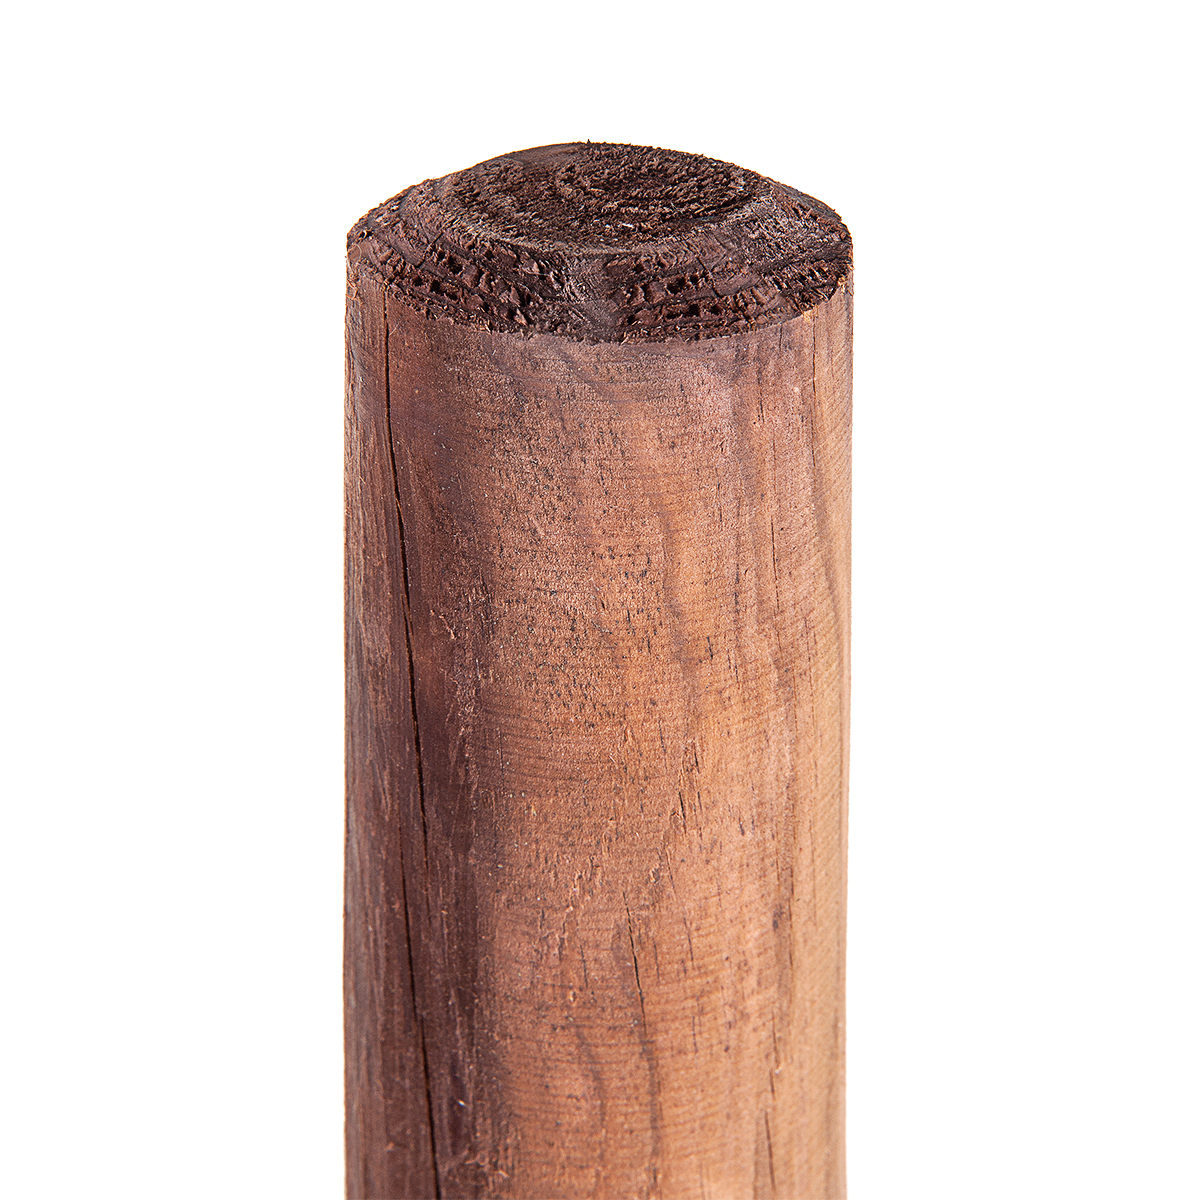 1 pz. Palina di legno 8cmØ x 50cm di altezza Paletto di legno Paletto di legno per recinzione